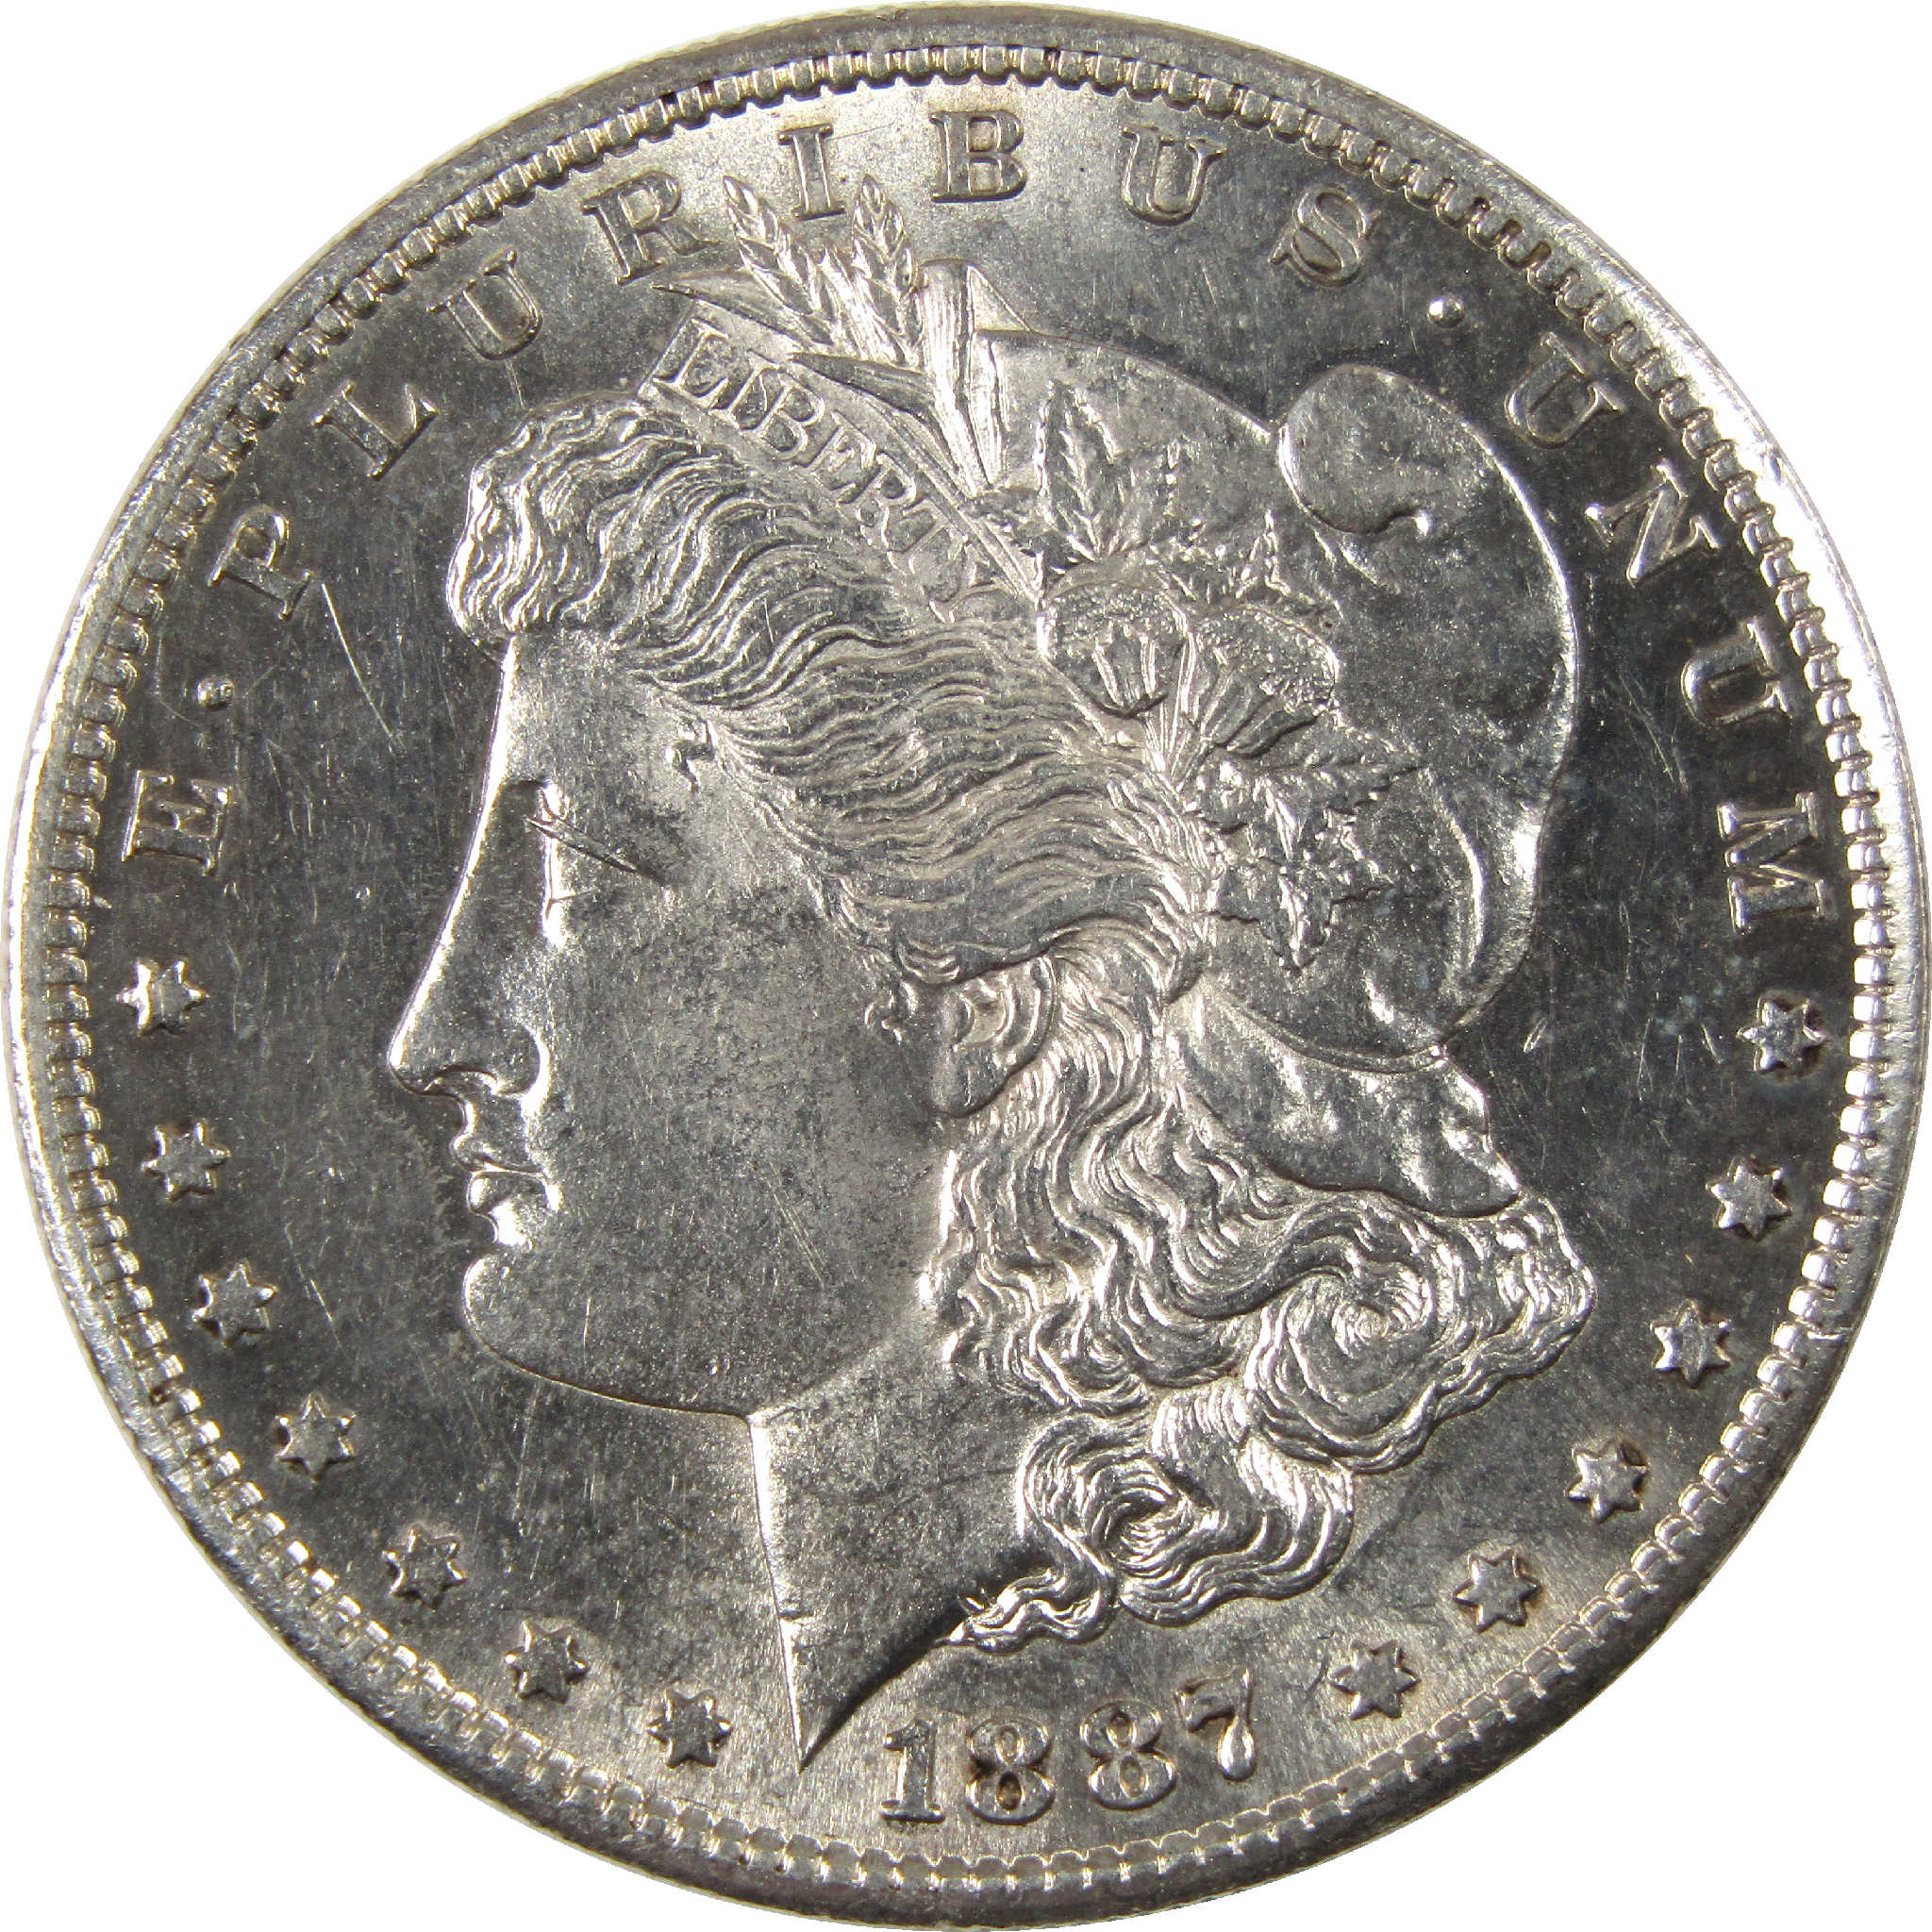 1887 S Morgan Dollar Borderline Uncirculated Silver $1 Coin SKU:I11643 - Morgan coin - Morgan silver dollar - Morgan silver dollar for sale - Profile Coins &amp; Collectibles